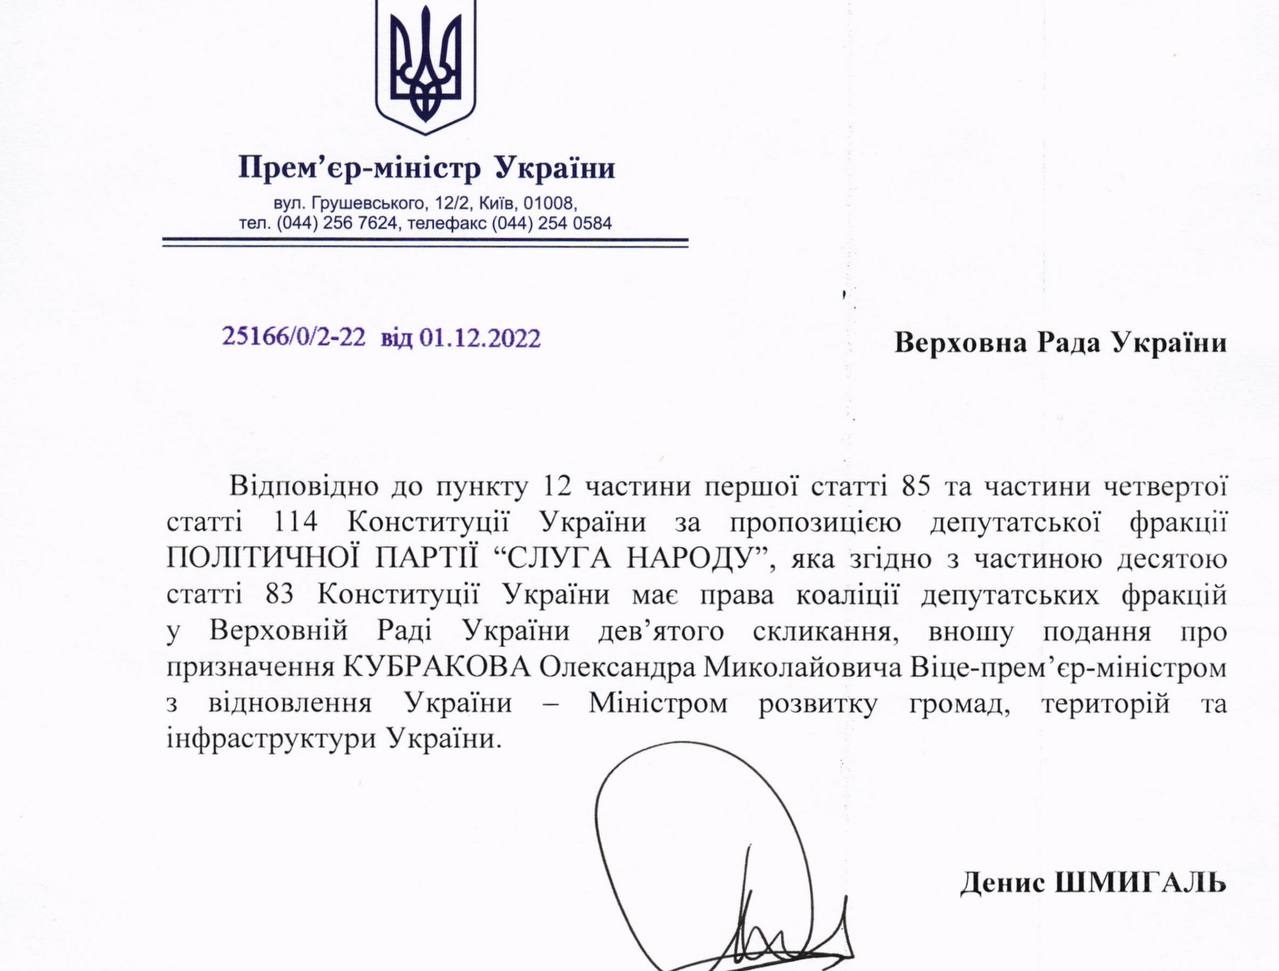 Рада призначила Кубракова віце-прем’єр-міністром з відновлення України